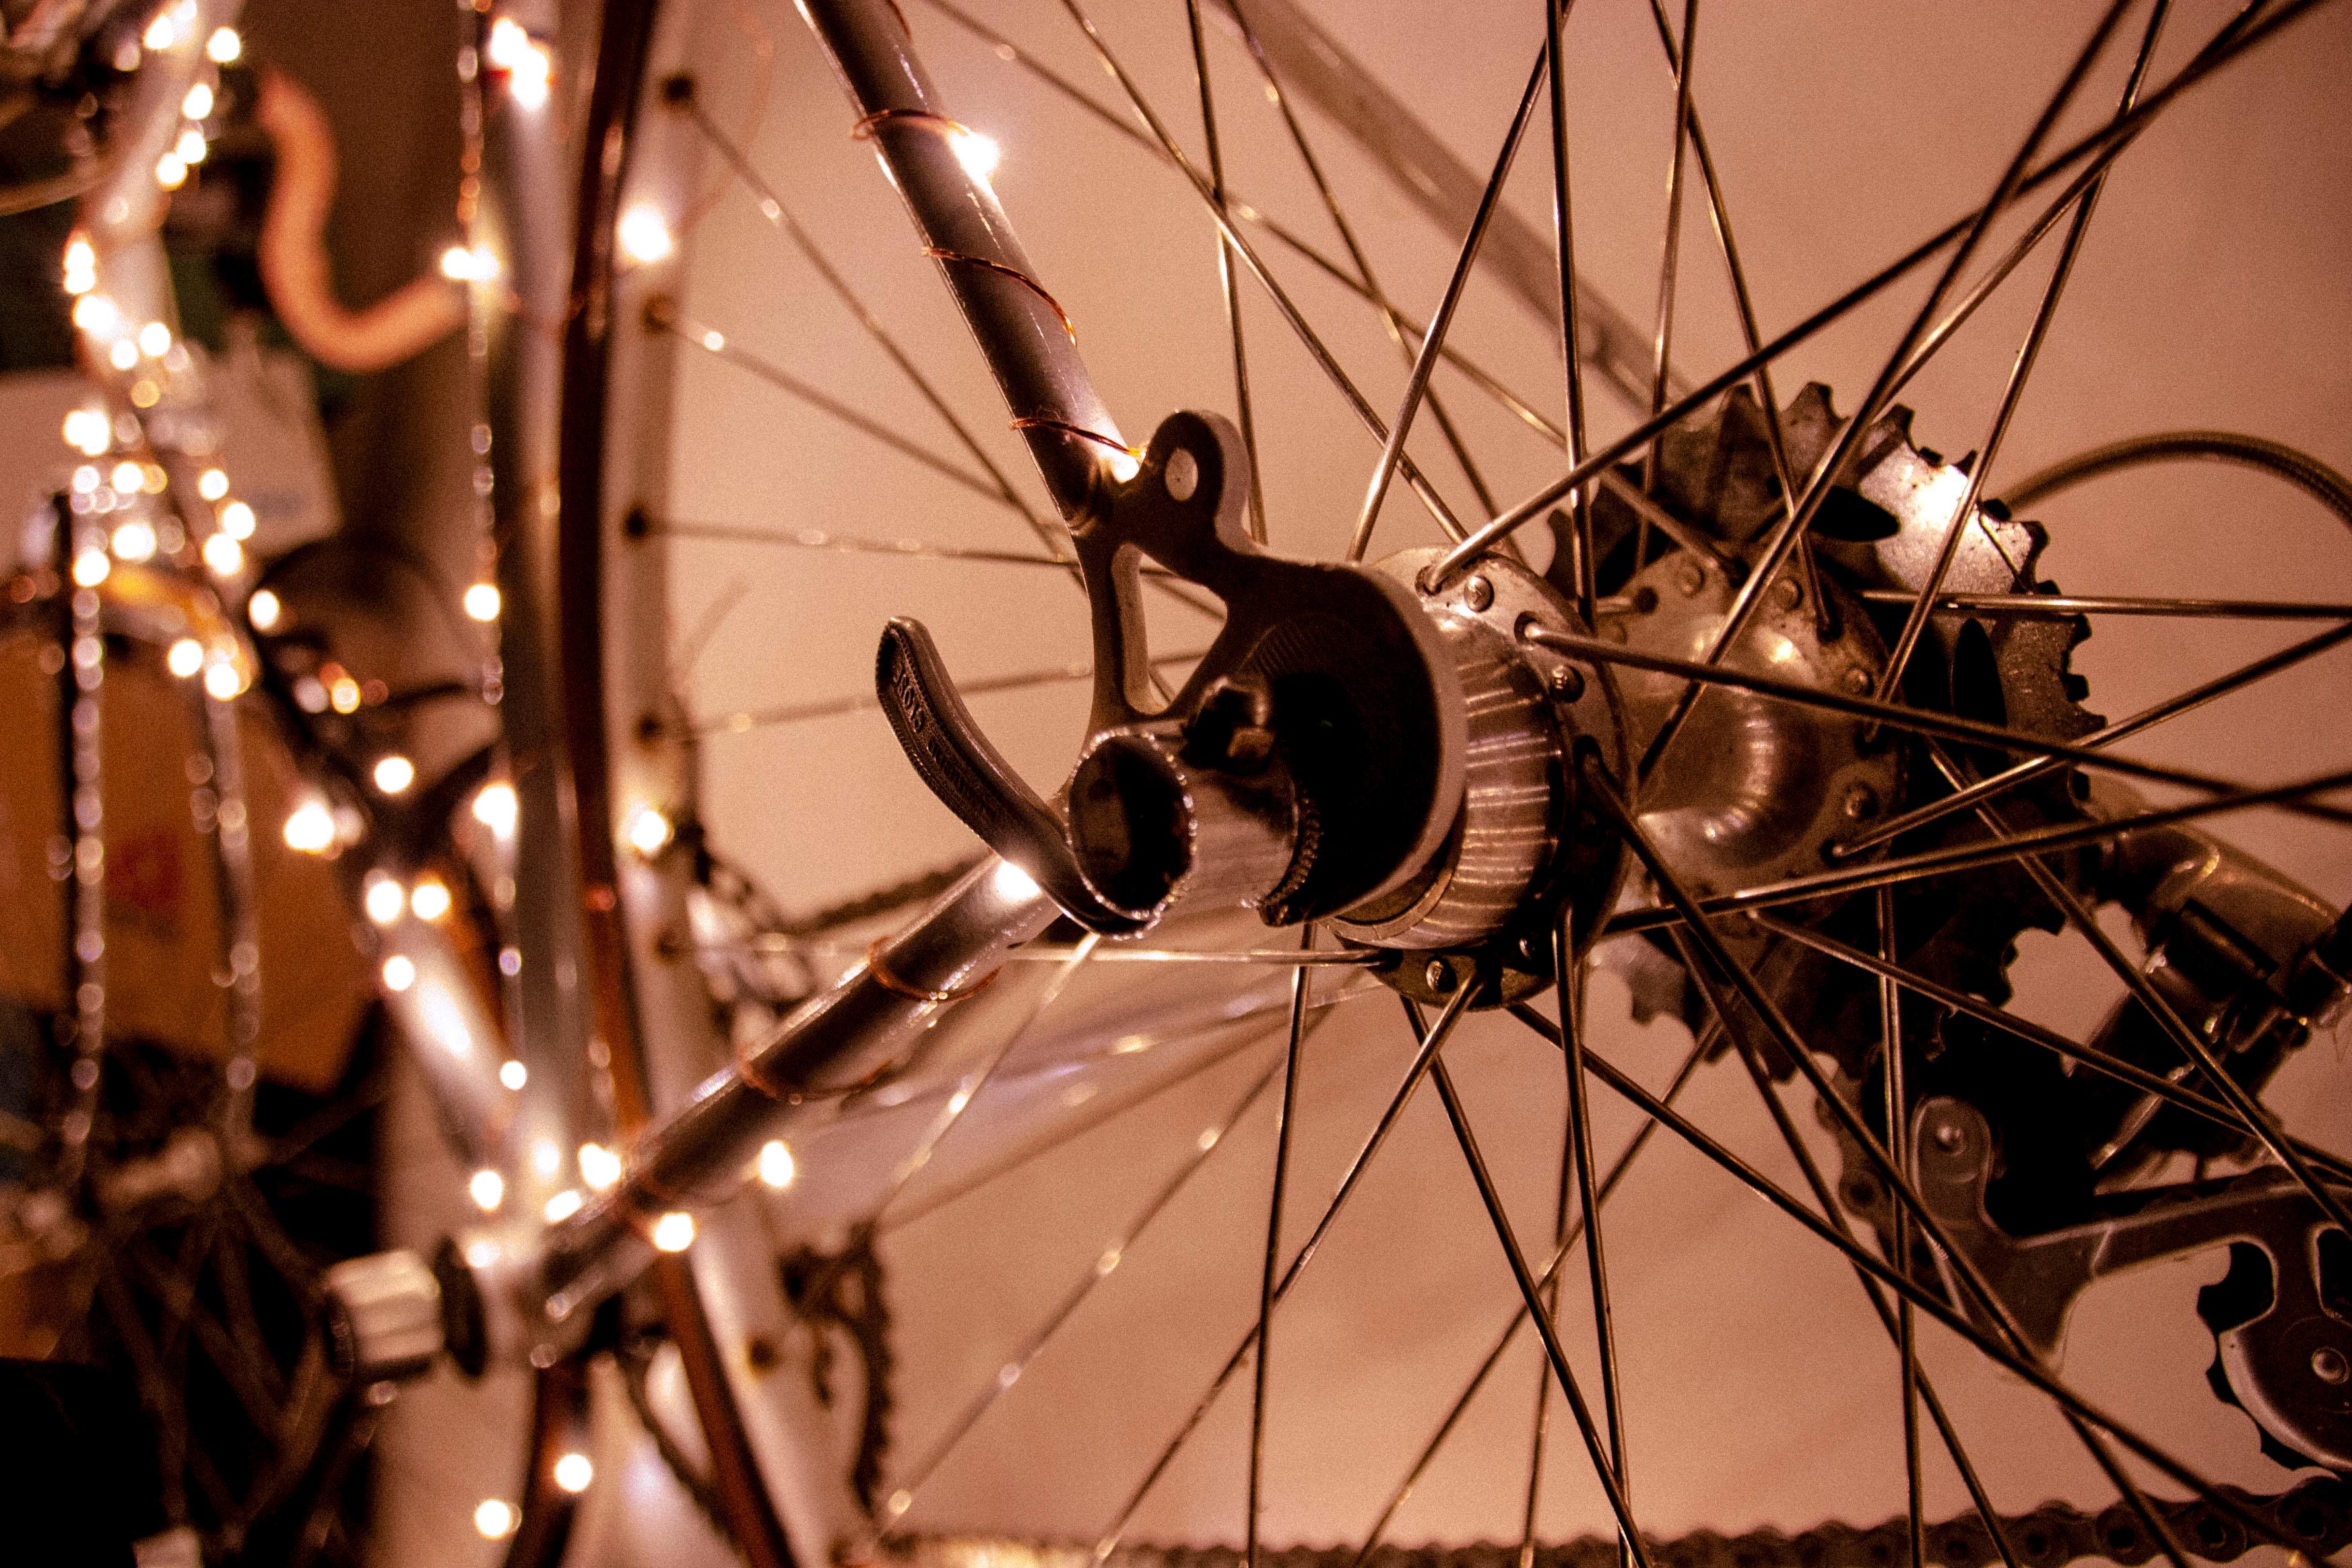 Alte aussortierte Fahrräder sind an der Wand montiert echte Hingucker #bikelike